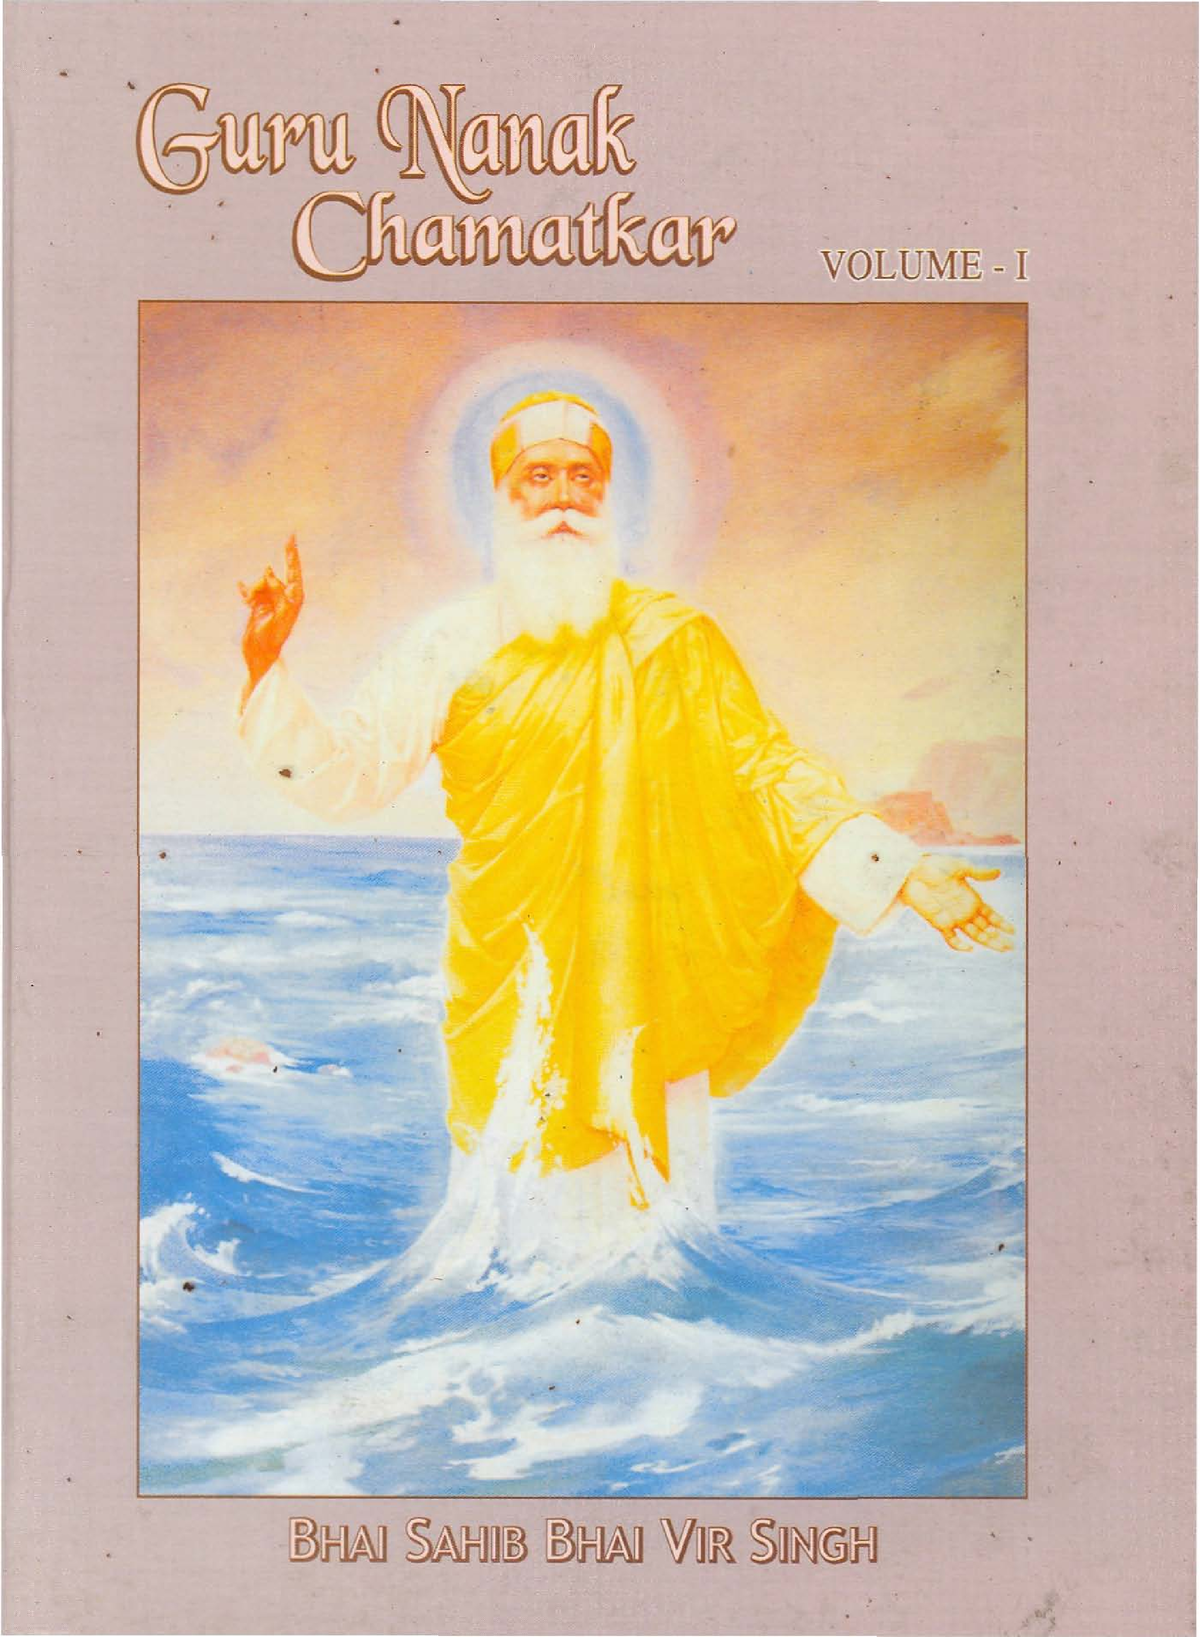 Guru Nanak Chamatkar (Part 2)-Bhai Vir Singh English  - Vidhia.com